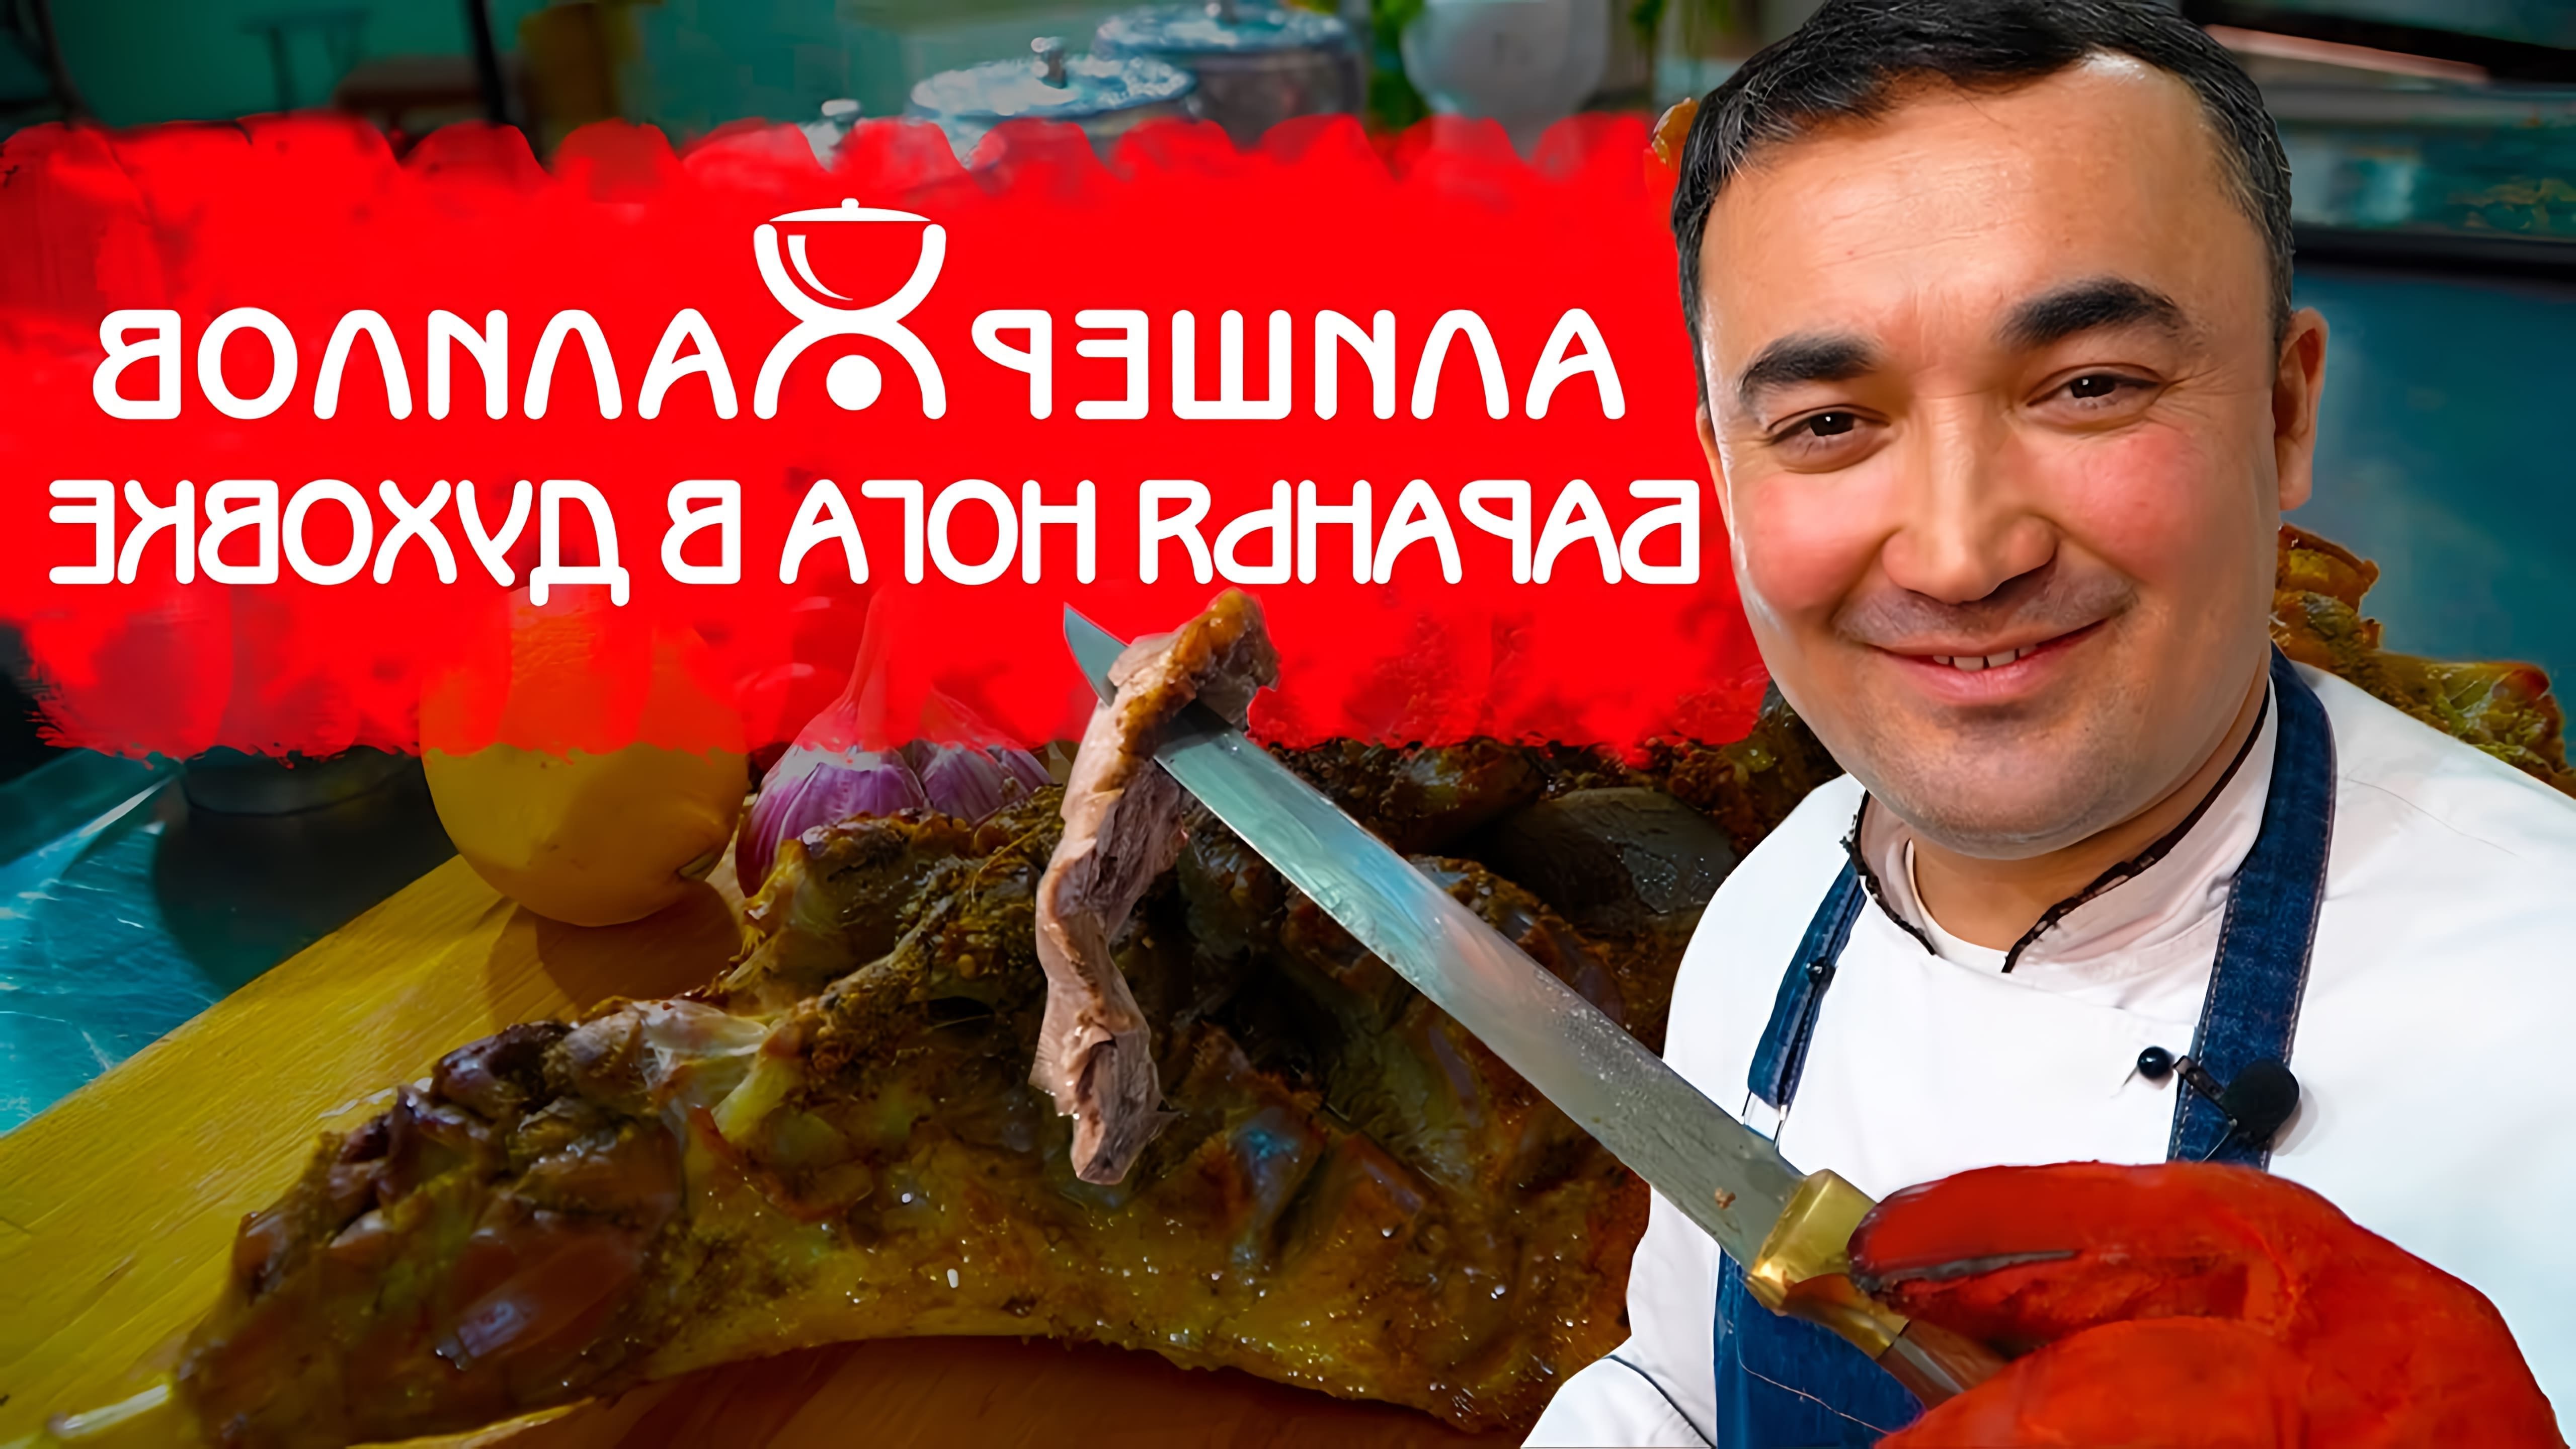 В этом видео Алишер Халилов показывает, как приготовить баранью ногу в духовке